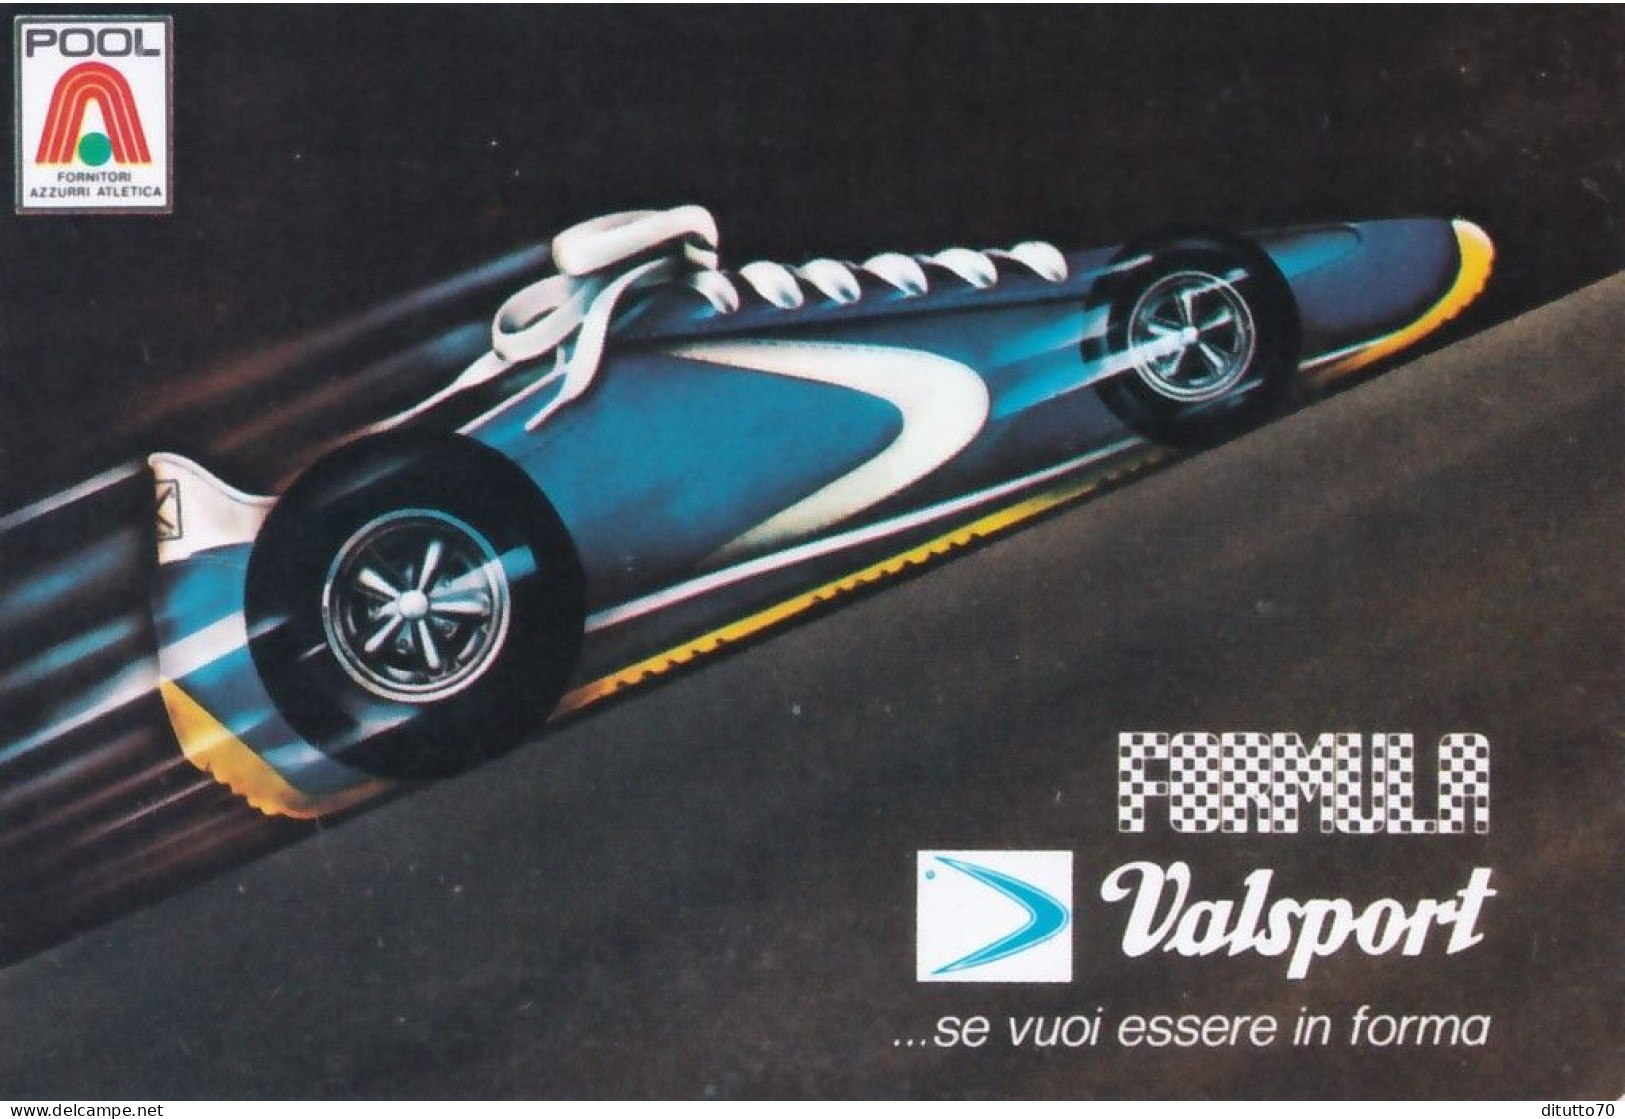 Calendarietto - Valsport - Anno 1977 - Klein Formaat: 1971-80